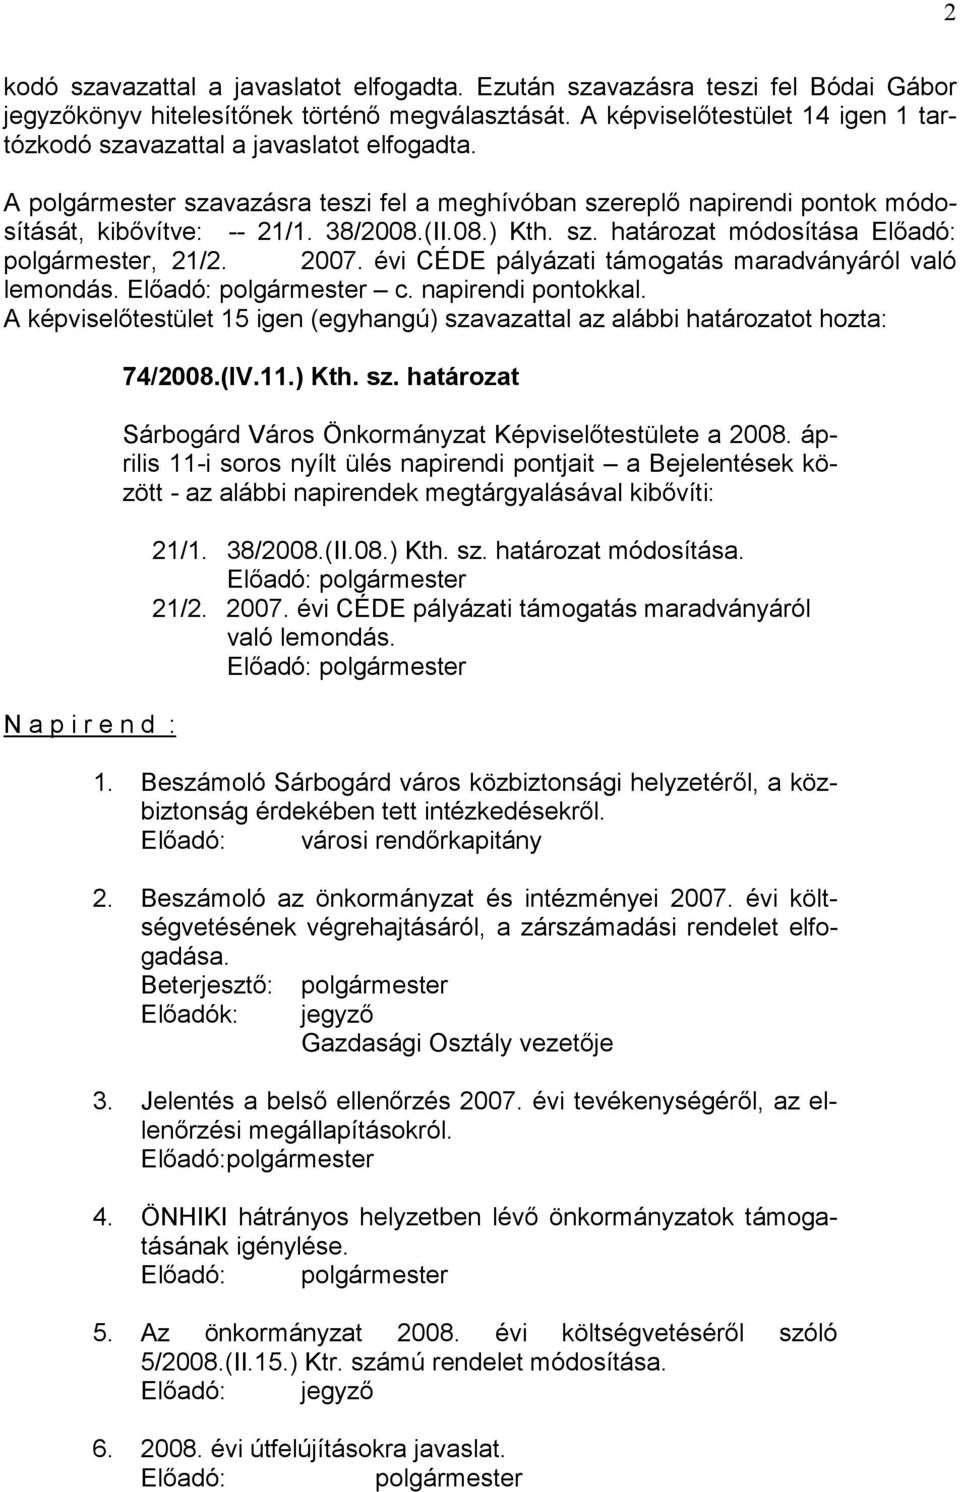 sz. határozat módosítása Előadó: polgármester, 21/2. 2007. évi CÉDE pályázati támogatás maradványáról való lemondás. Előadó: polgármester c. napirendi pontokkal.